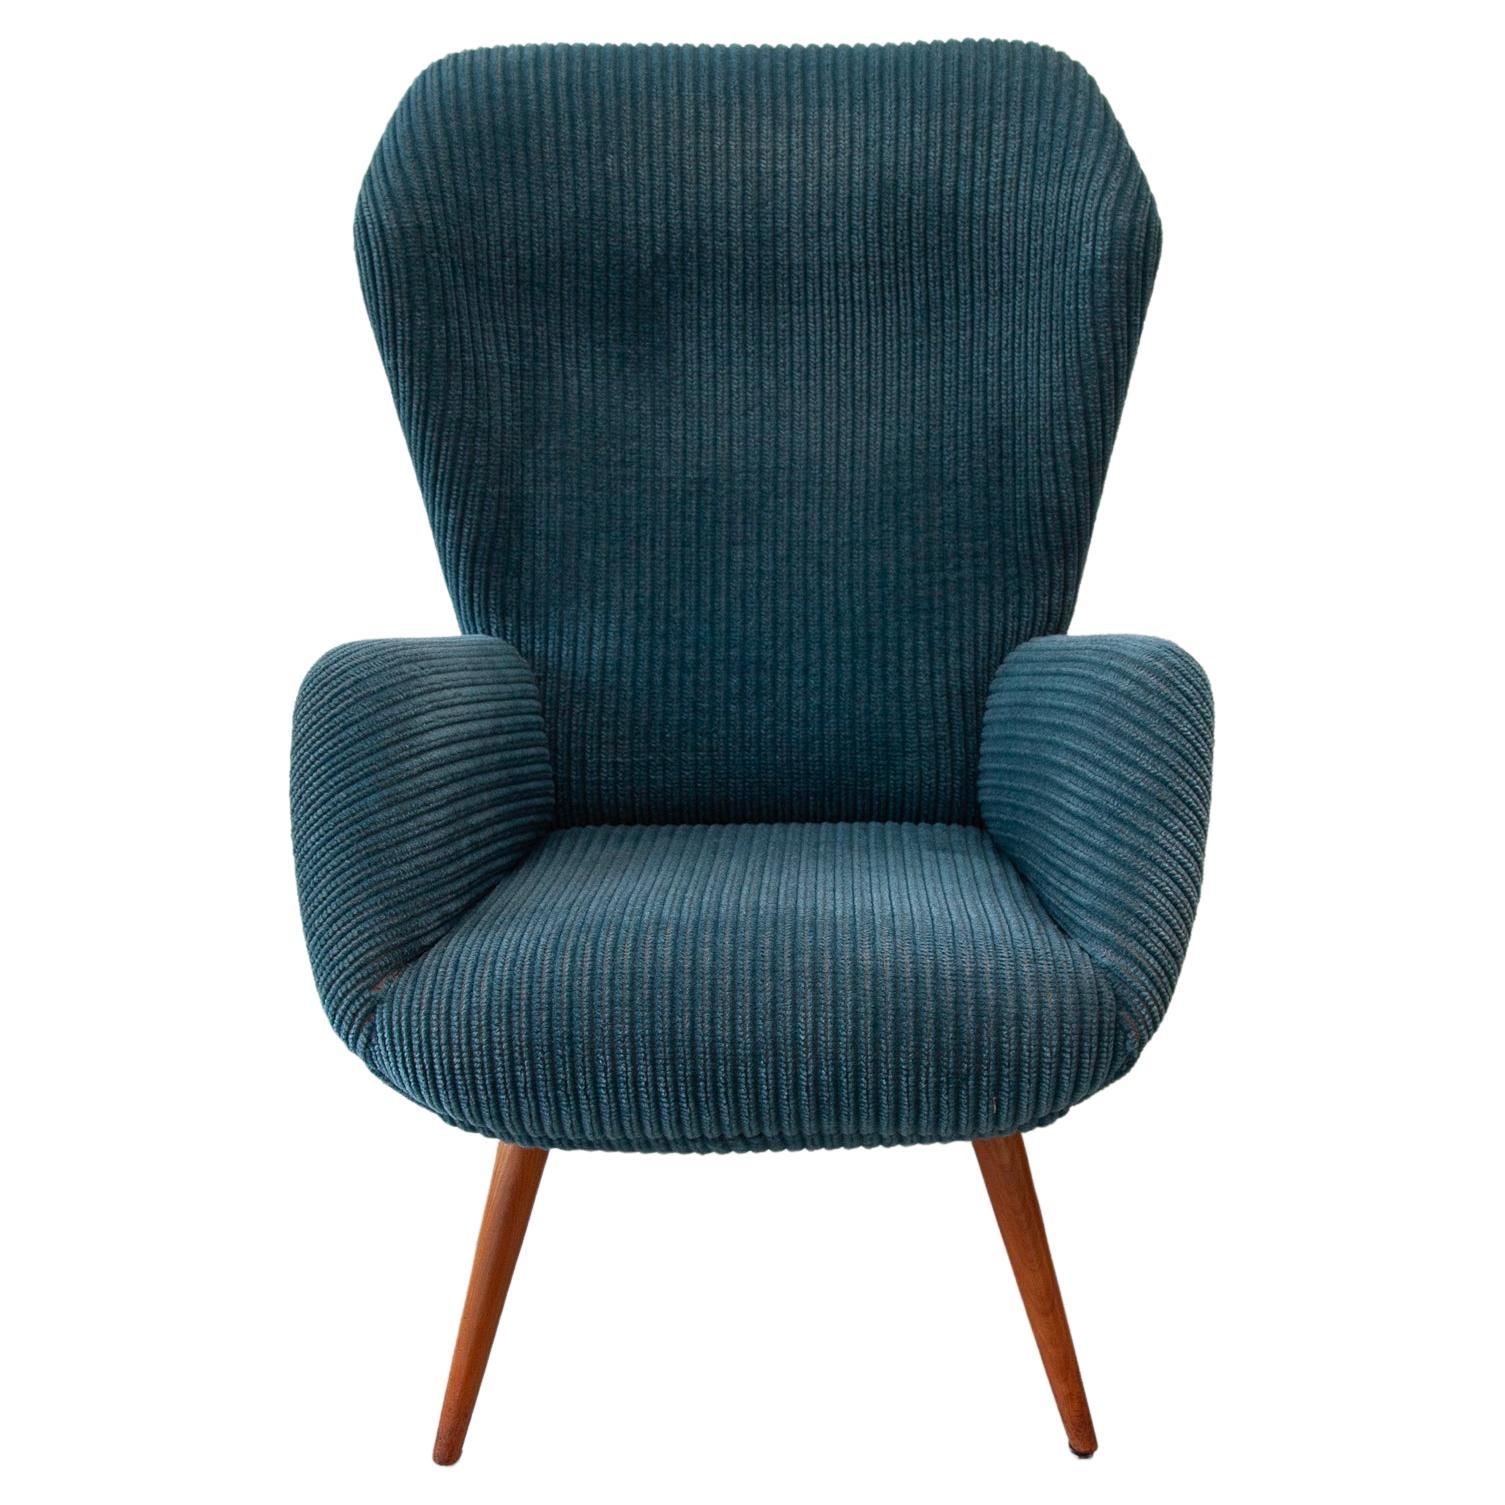 Chaise longue à dossier ailé conçue par le designer allemand Ernst Max Jahn pour Deutsche Werkstätten Hellerau. Le cadre présente un magnifique design, repose sur quatre élégants pieds effilés en teck et est recouvert d'une douce tapisserie bleue.